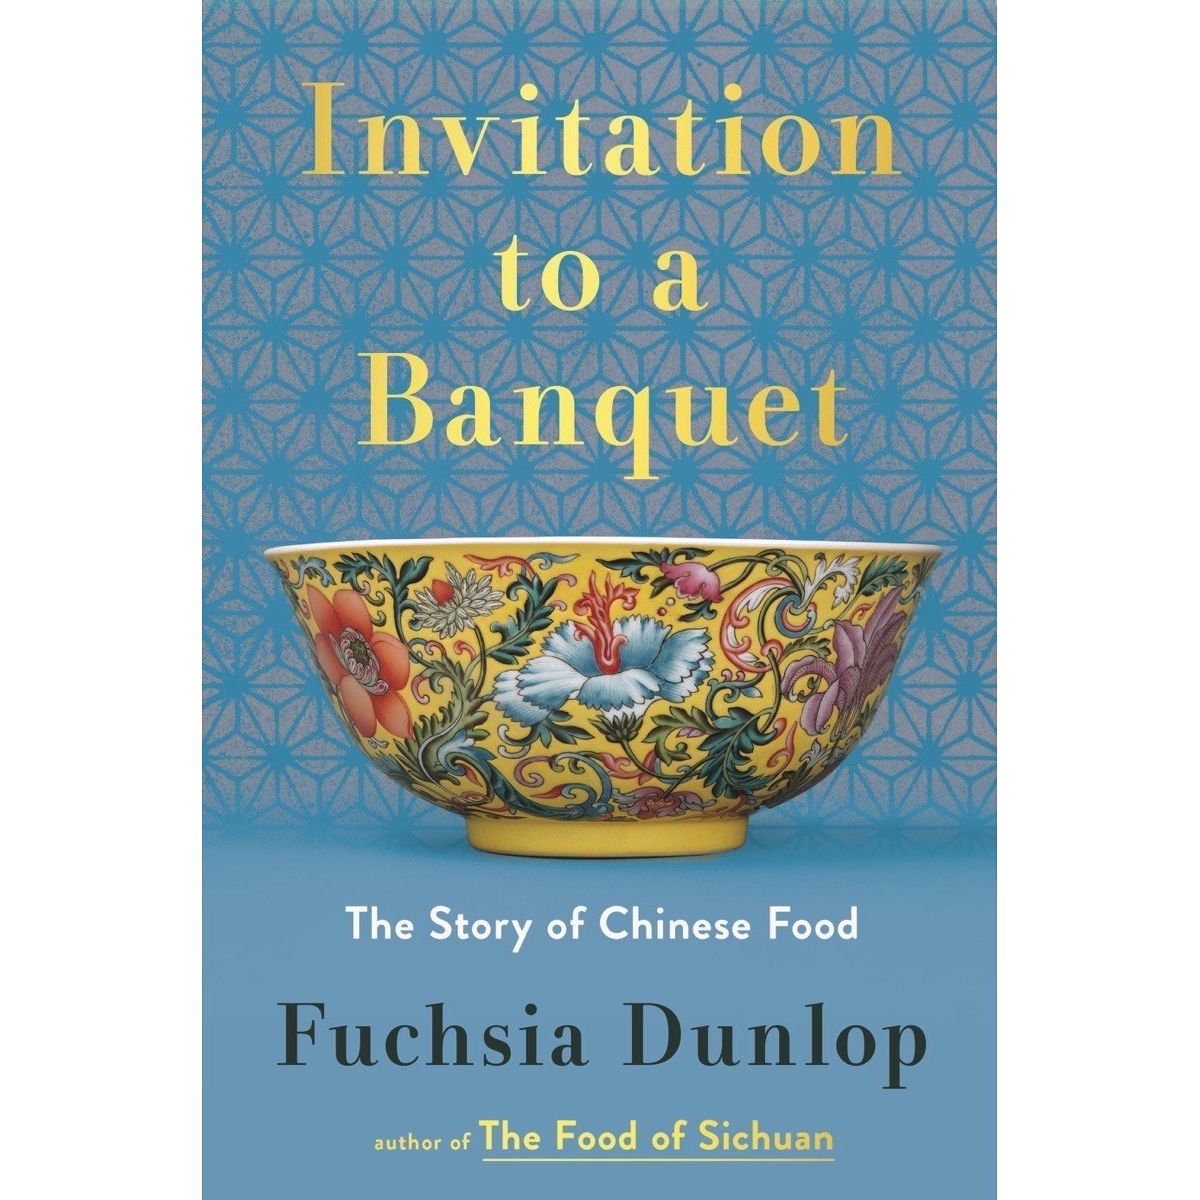 Invitation to a Banquet (Fuchsia Dunlop)